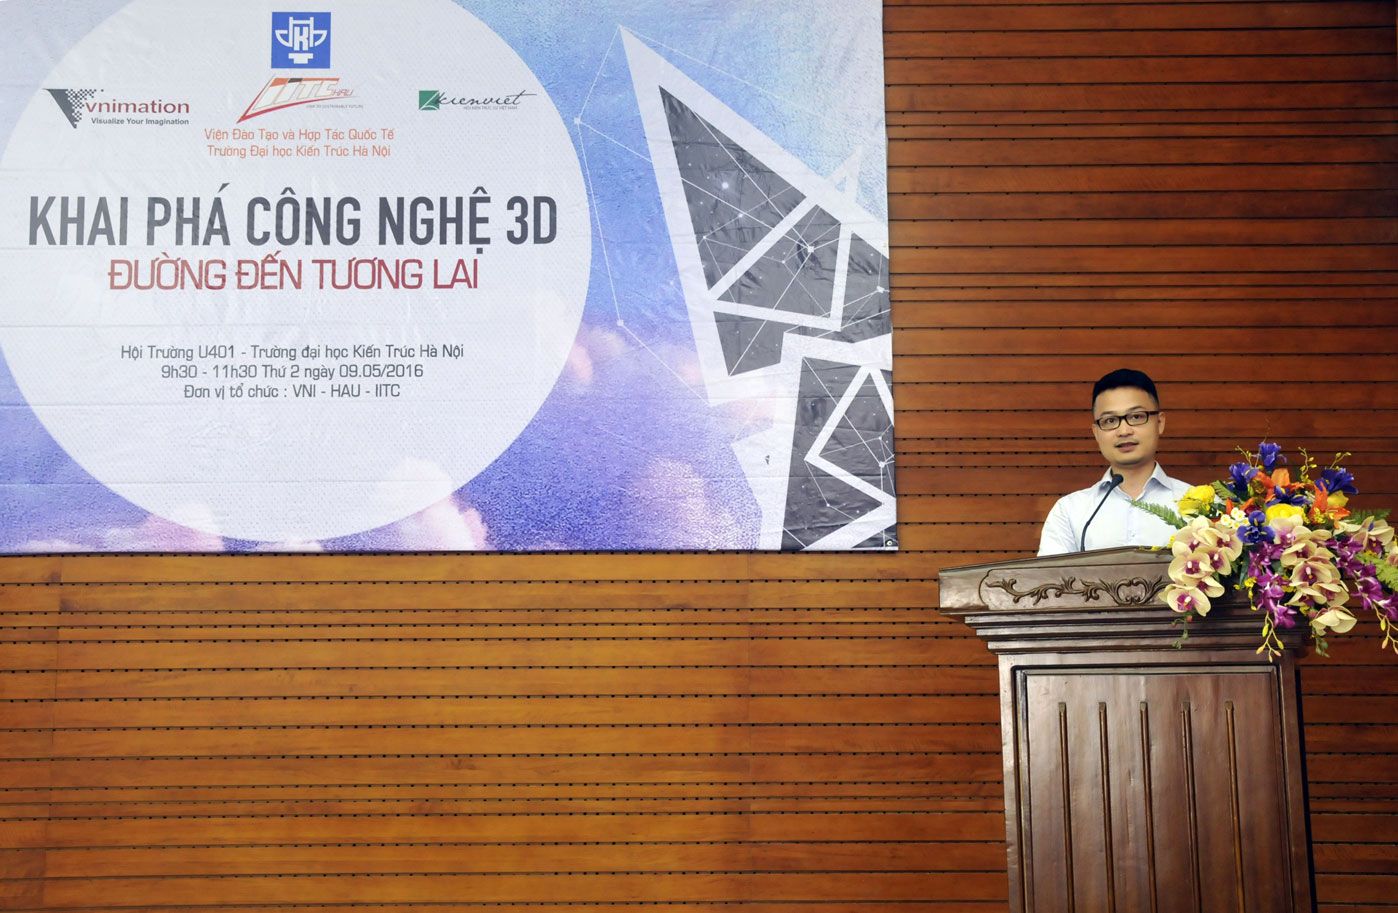 Anh Đinh Anh Tuấn, Giám đốc công ty VNimation, nói về mục đích của buổi hội thảo